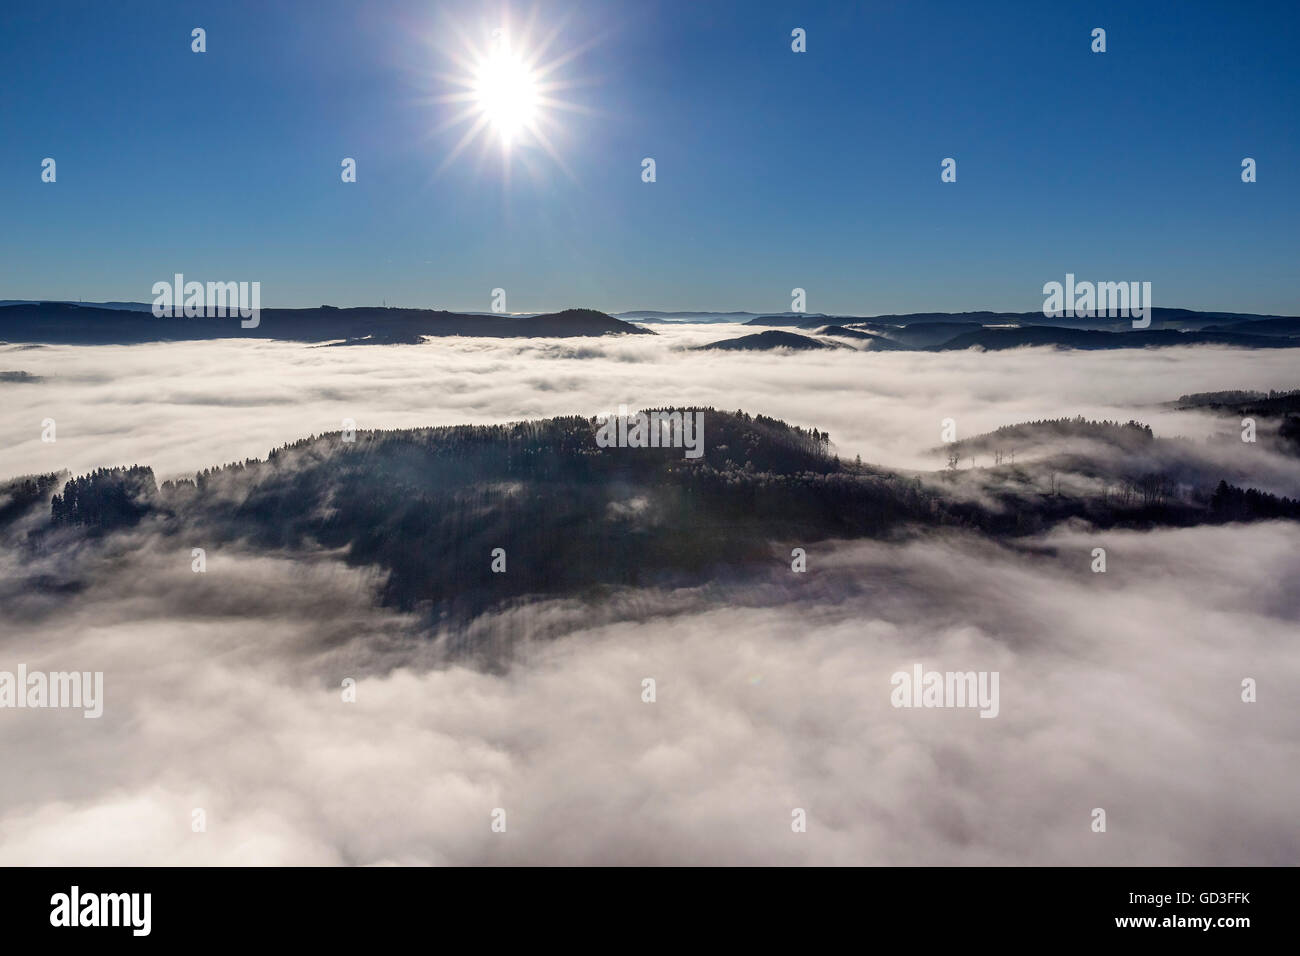 Vista aerea, copertura nuvolosa nelle valli di Meschede, Meschede, Sauerland, Renania settentrionale-Vestfalia, Germania, Europa, vista aerea, Foto Stock